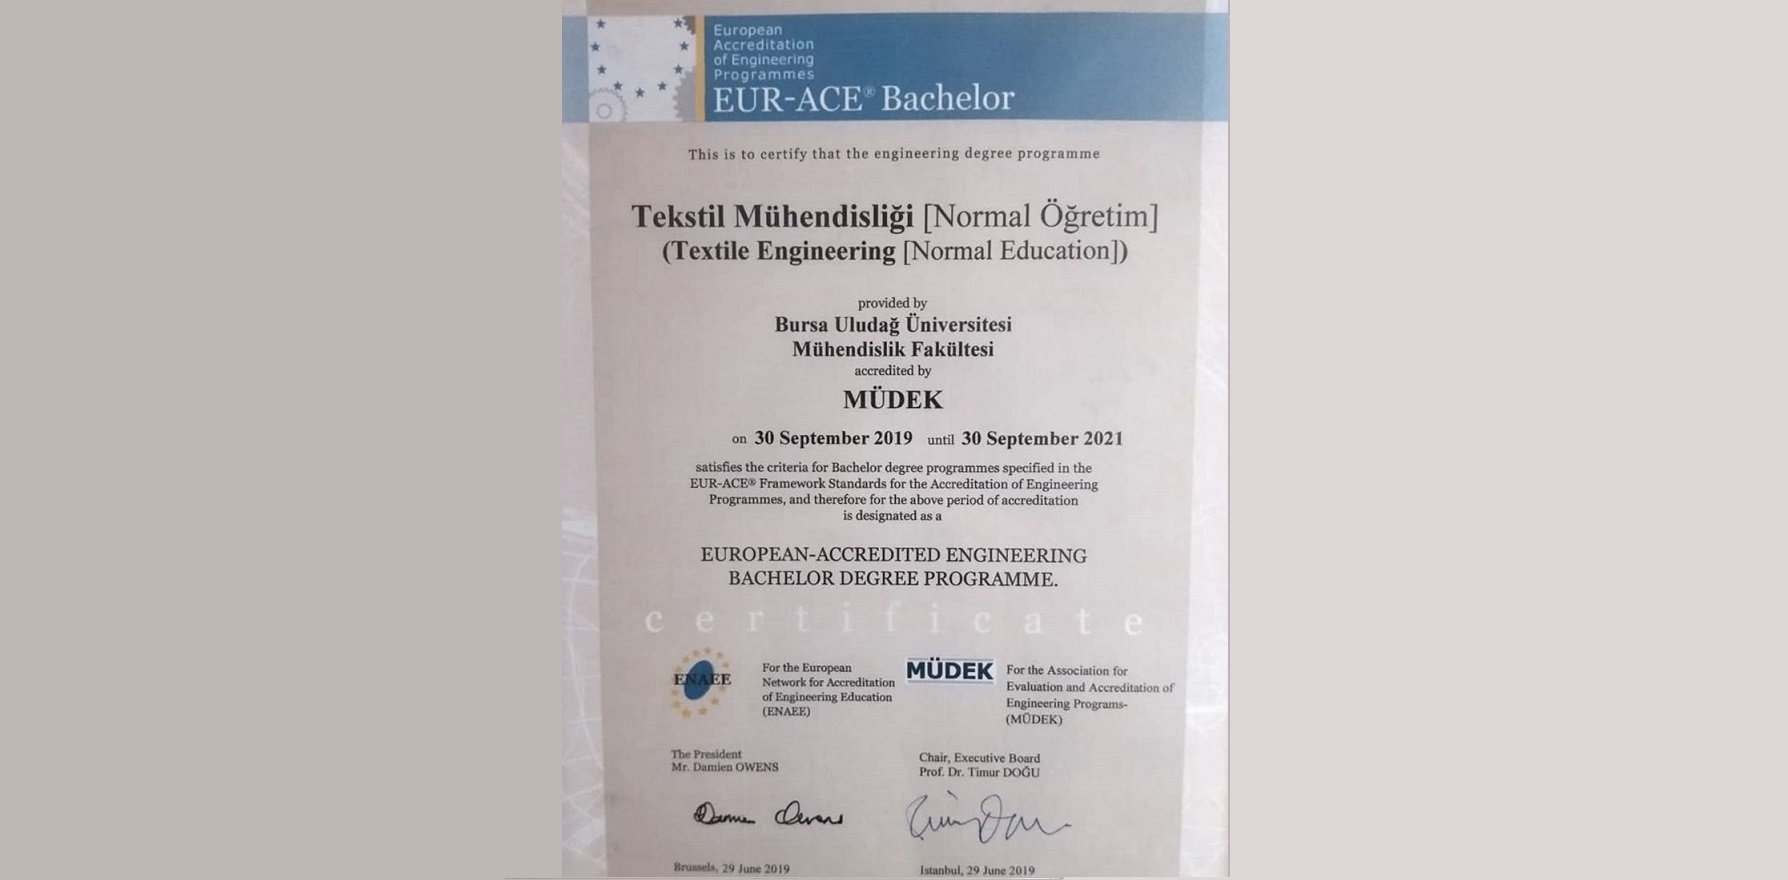  Tekstil Mühendisliği Bölümü Lisans Programı 30 Eylül 2021 tarihine kadar 2 yıl süreyle MÜDEK tarafından akredite edilmiştir. 